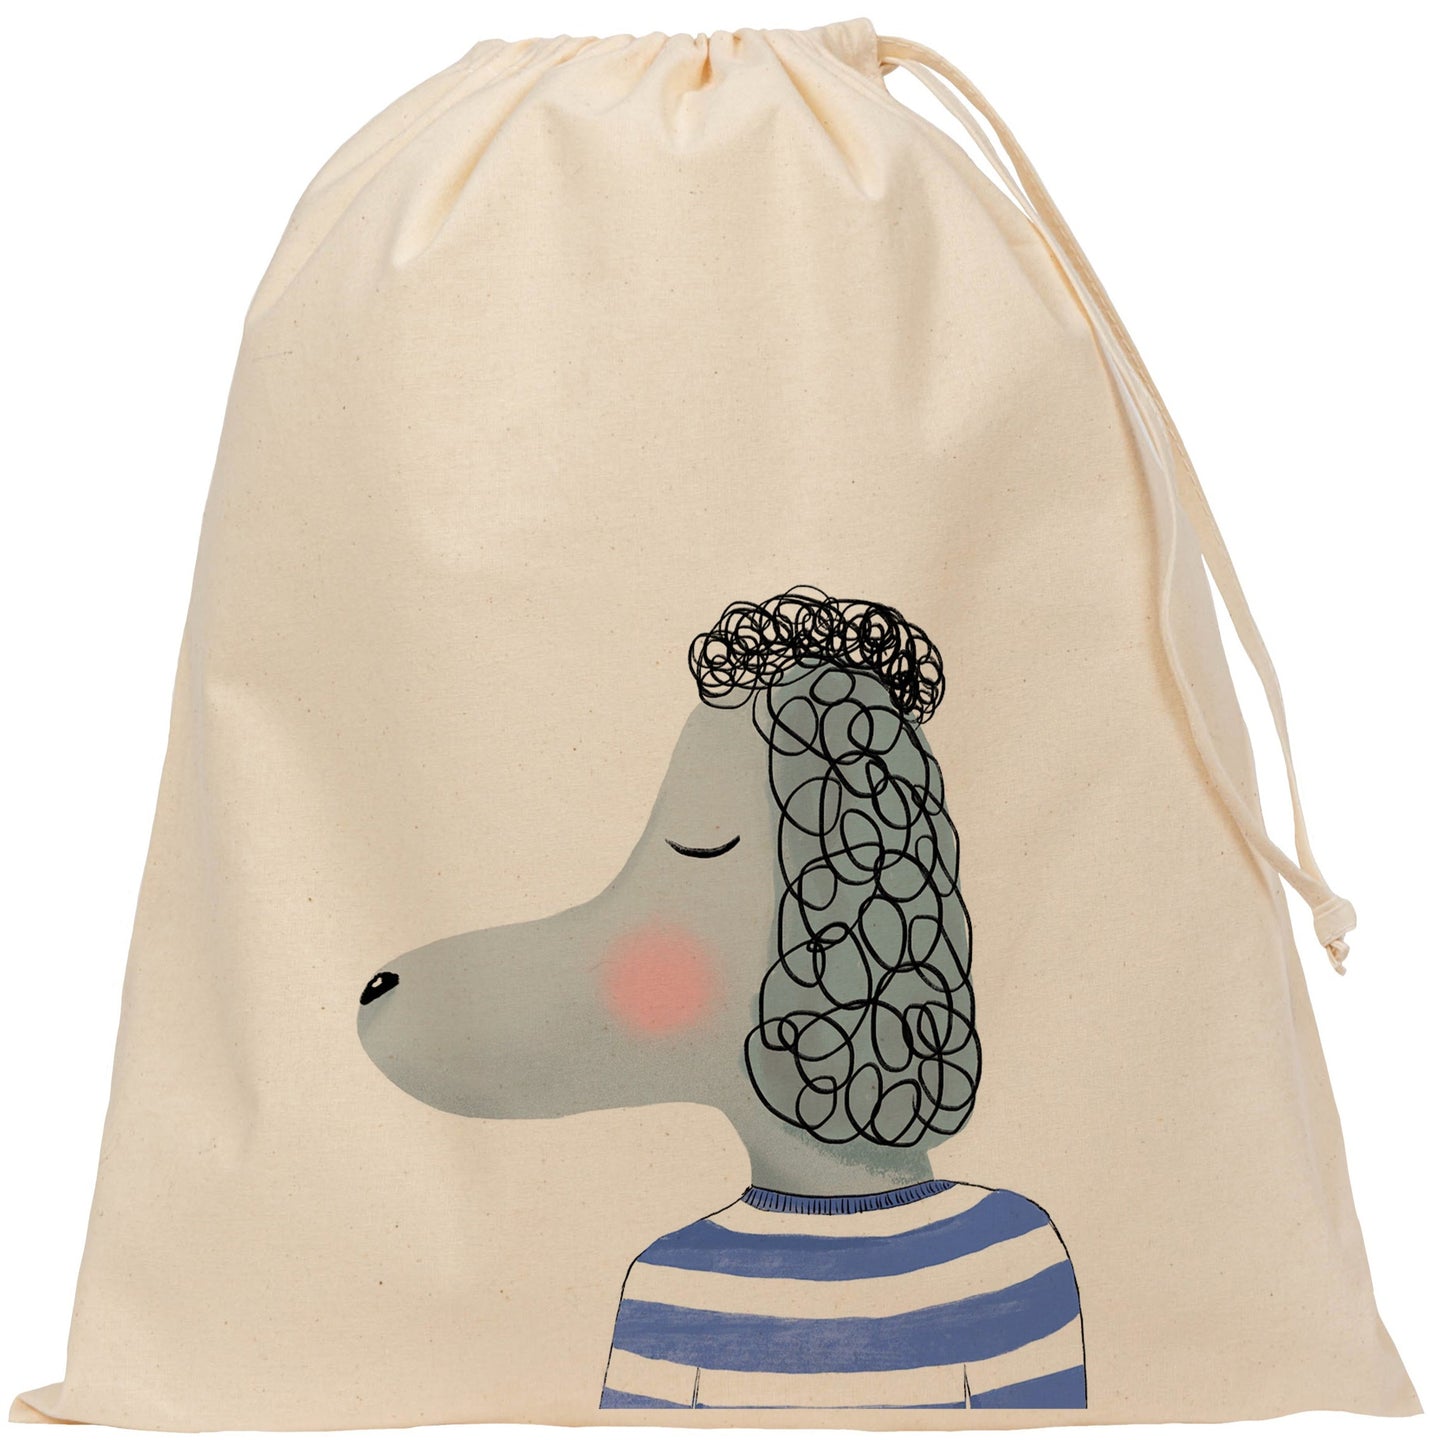 Poodle drawstring bag